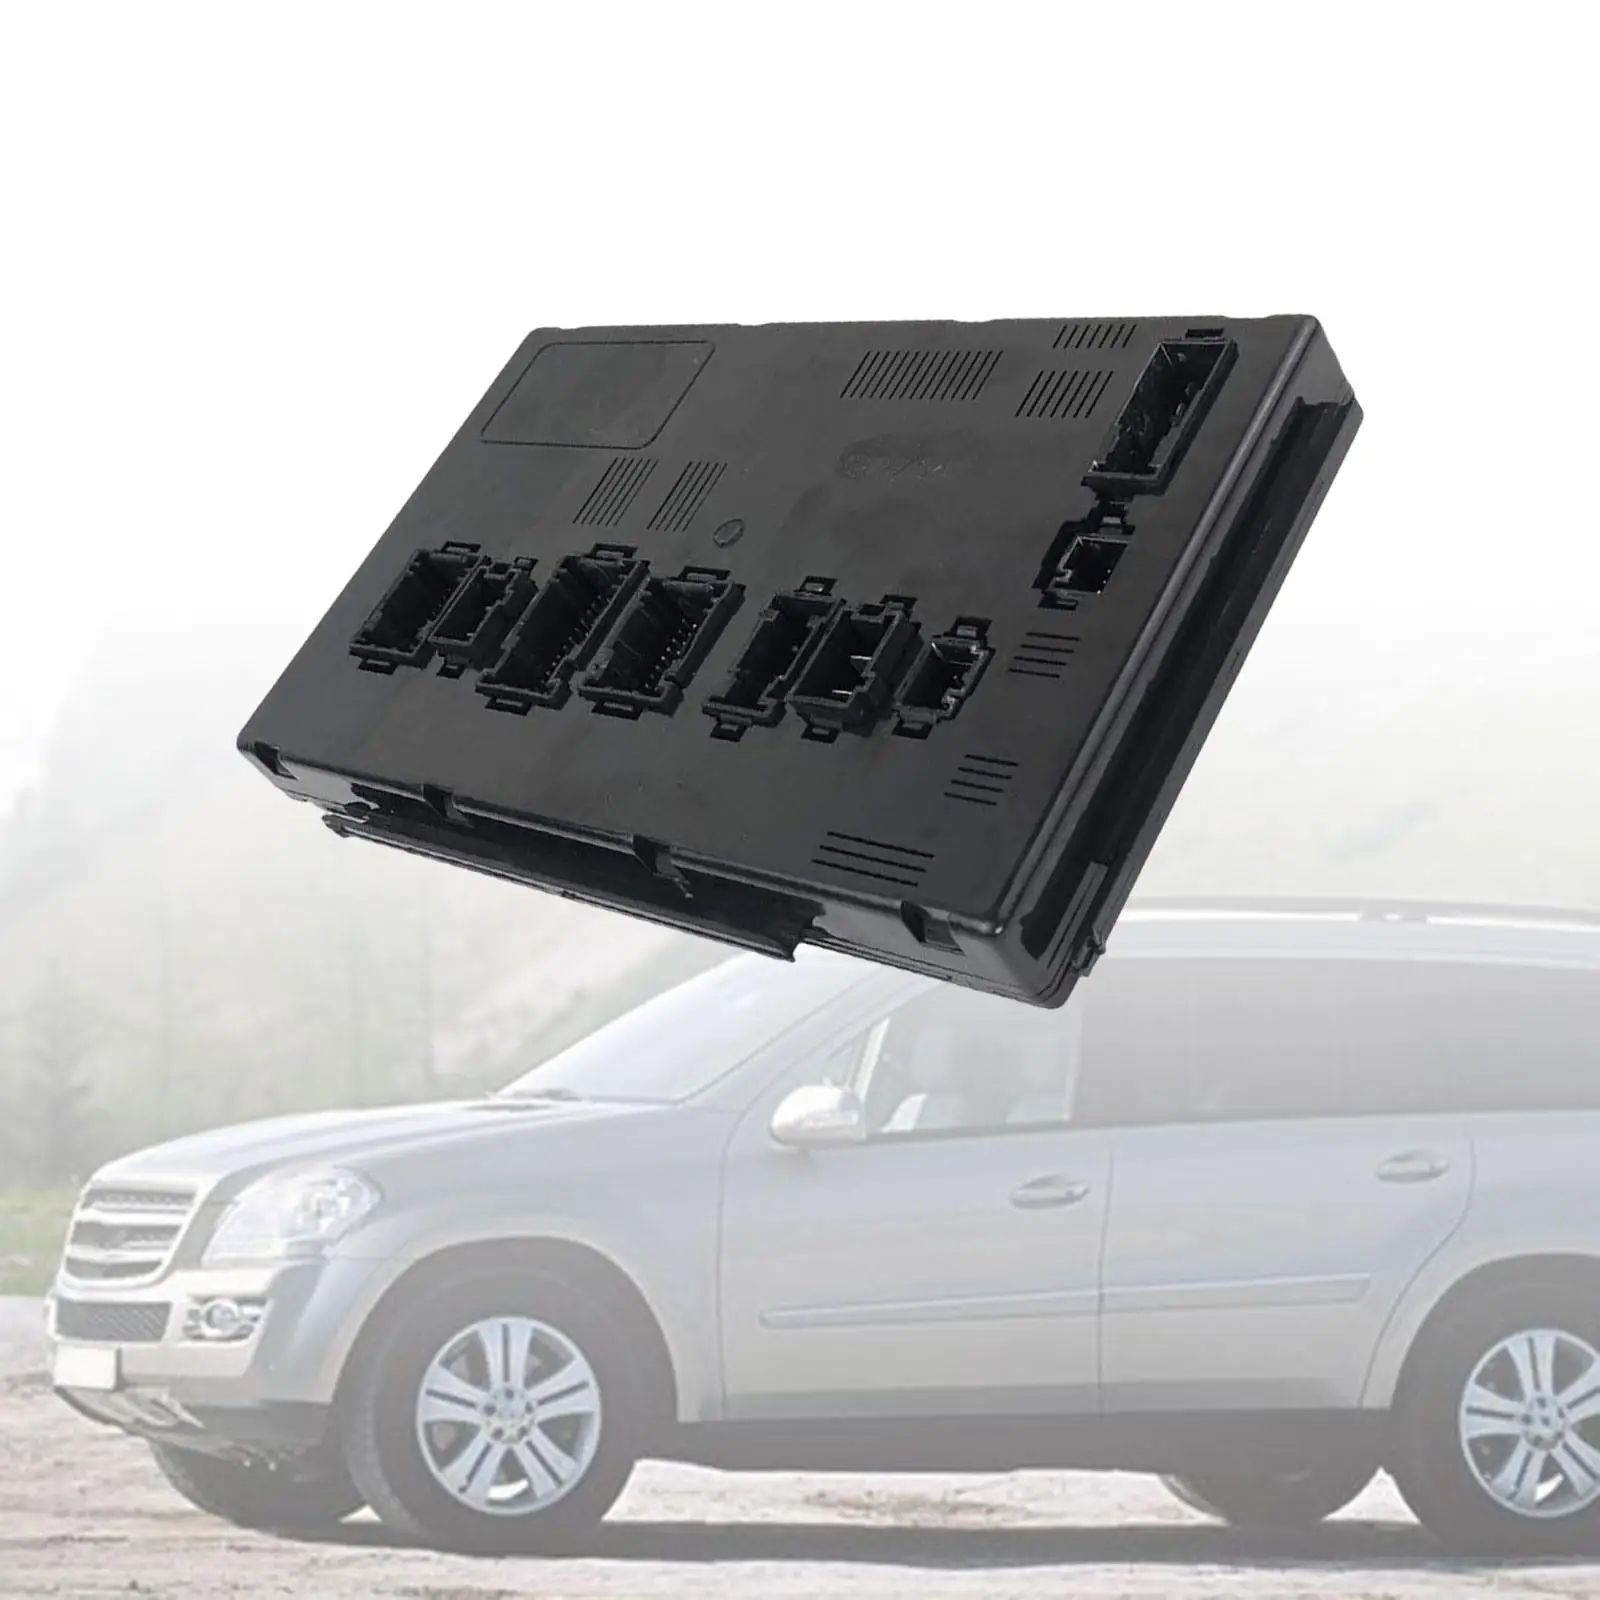 Automotive Rear Signal Acquisition Module Durable High Performance Control Unit